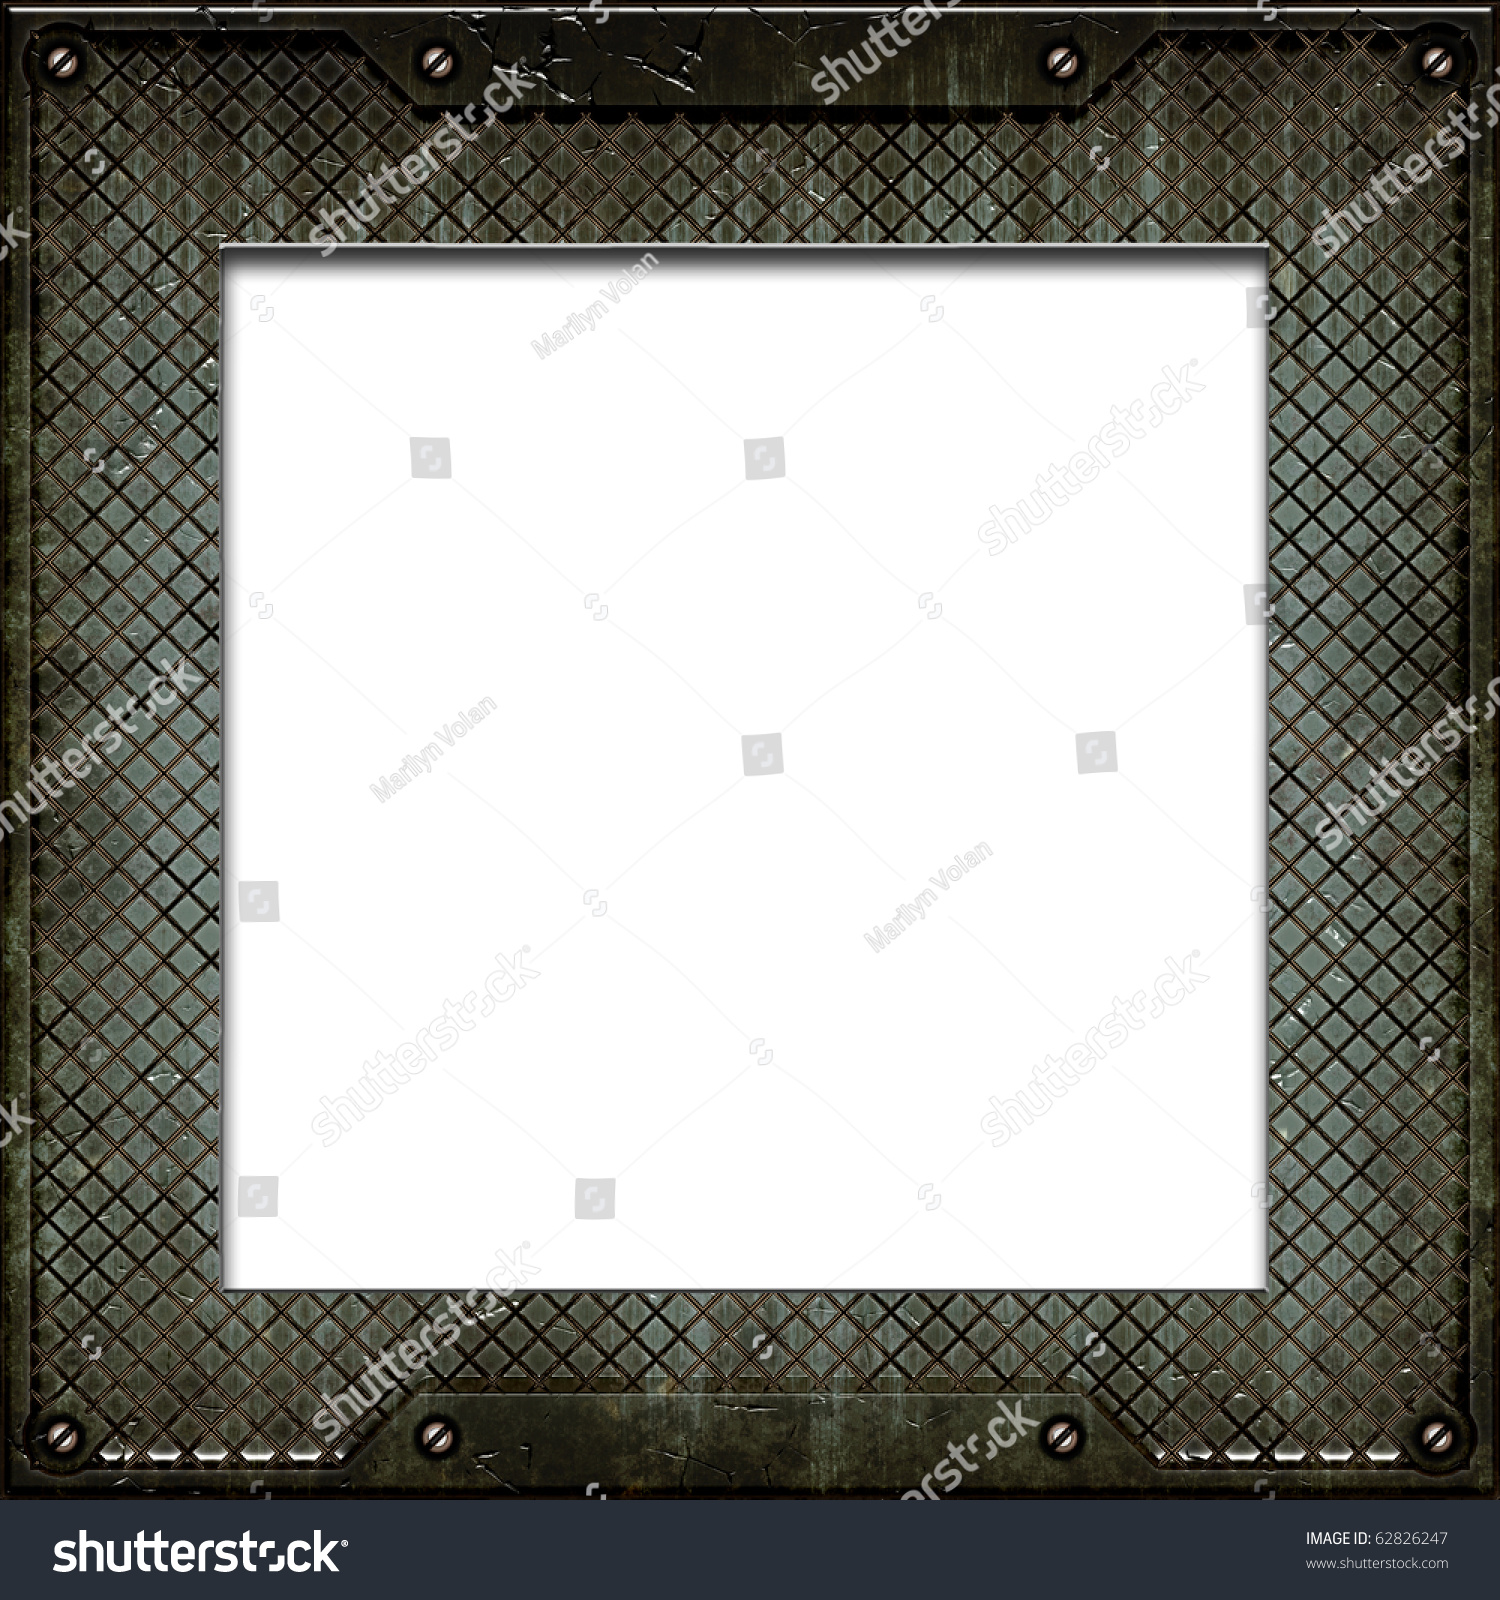 Metal Plate Grunge Border Frame White Stock Illustration 62826247 ...